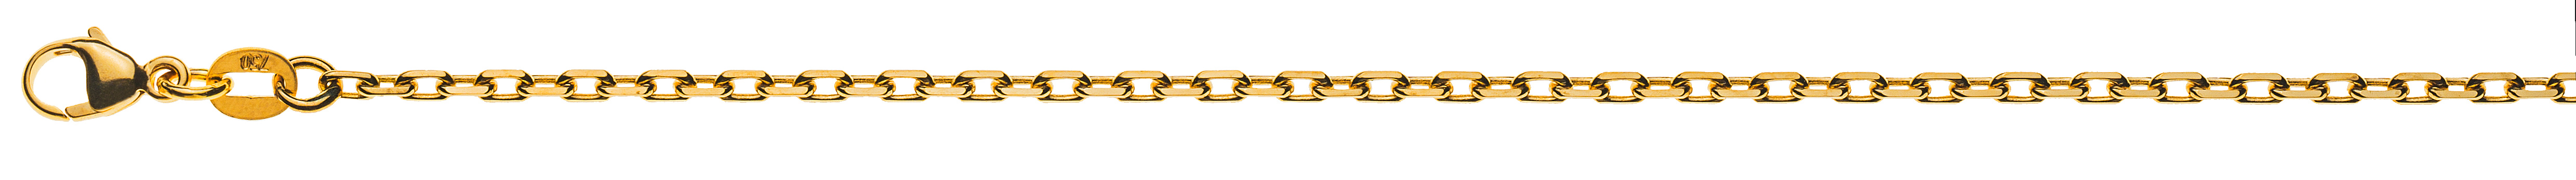 AURONOS Prestige Halskette Gelbgold 18K 4-Fach geschliffen Anker 42cm 2.1mm